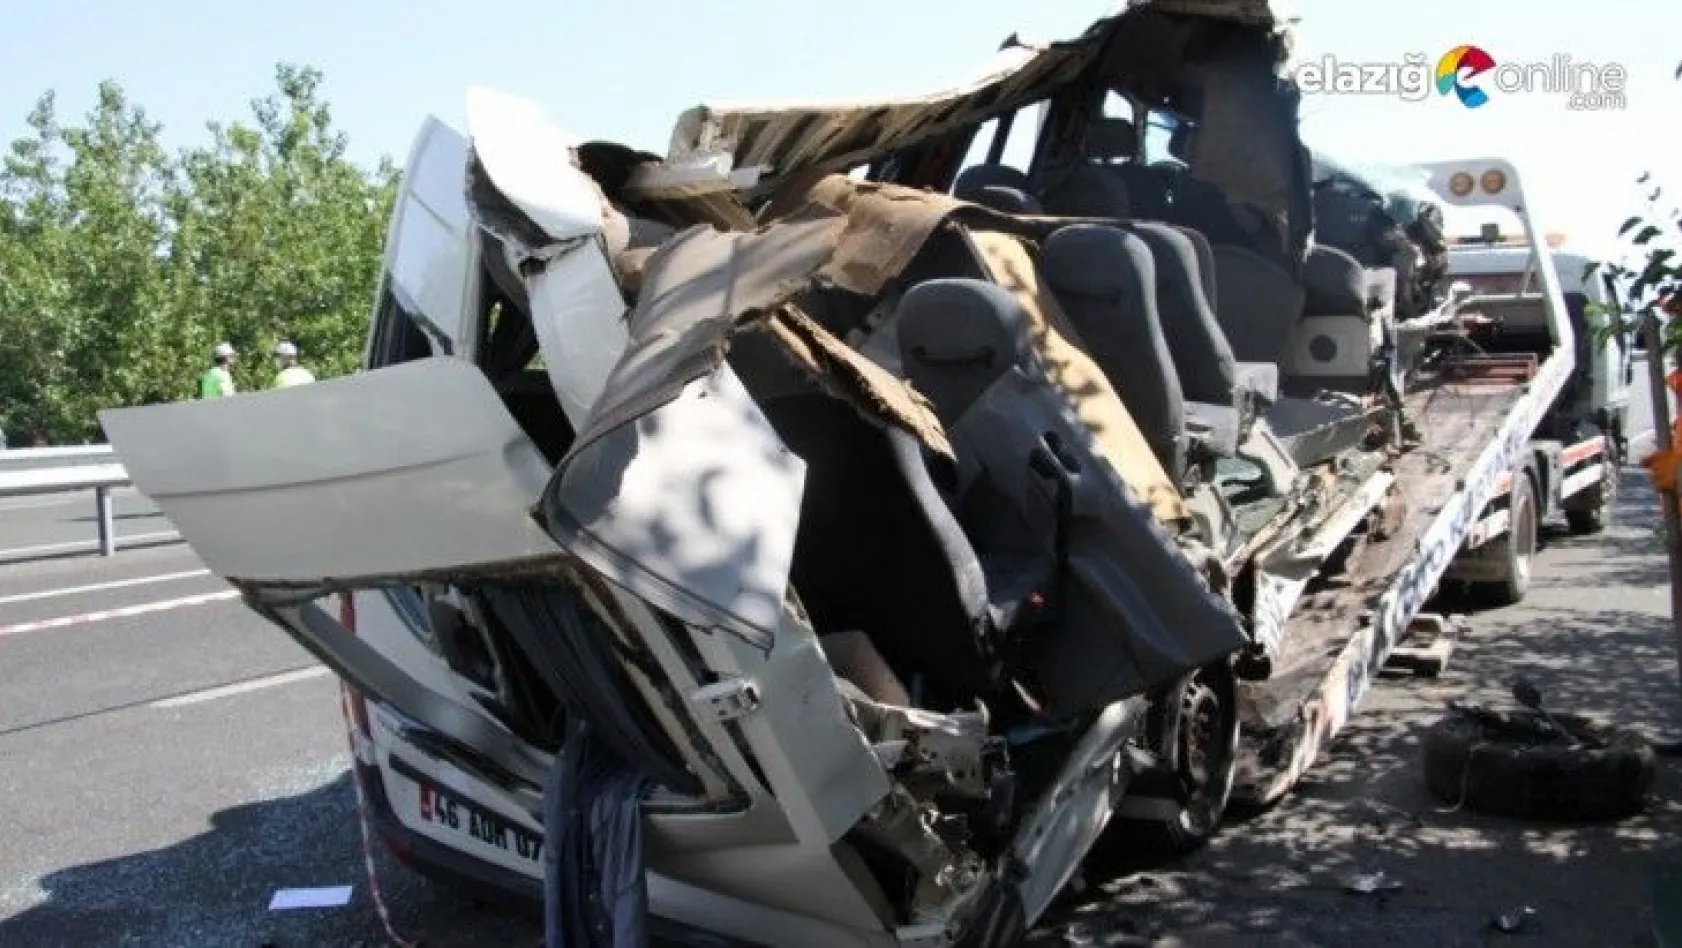 Elazığ'da 3 kişinin Ölümüne Neden Olan Sürücünün Gözüne Güneş Gelmiş